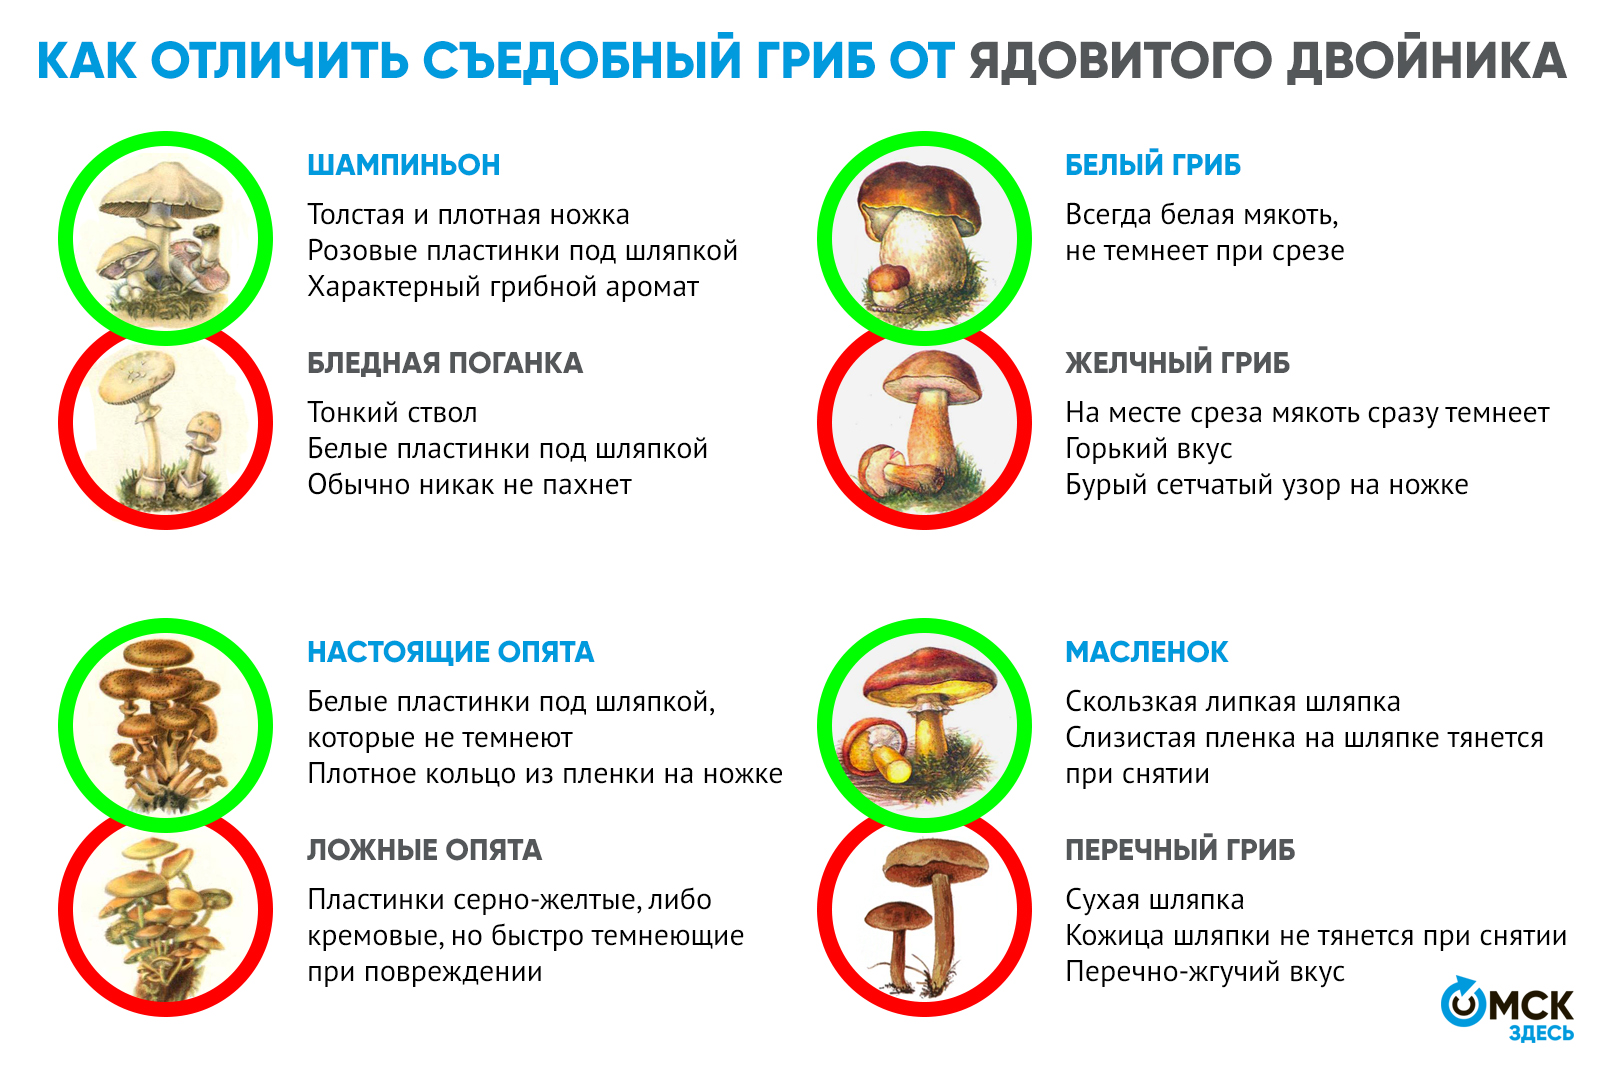 Сбор грибов: сроки в россии, украине, правила сбора, как и где искать грибы в лесу, ядовитые, зимние виды, правила первичной обработки